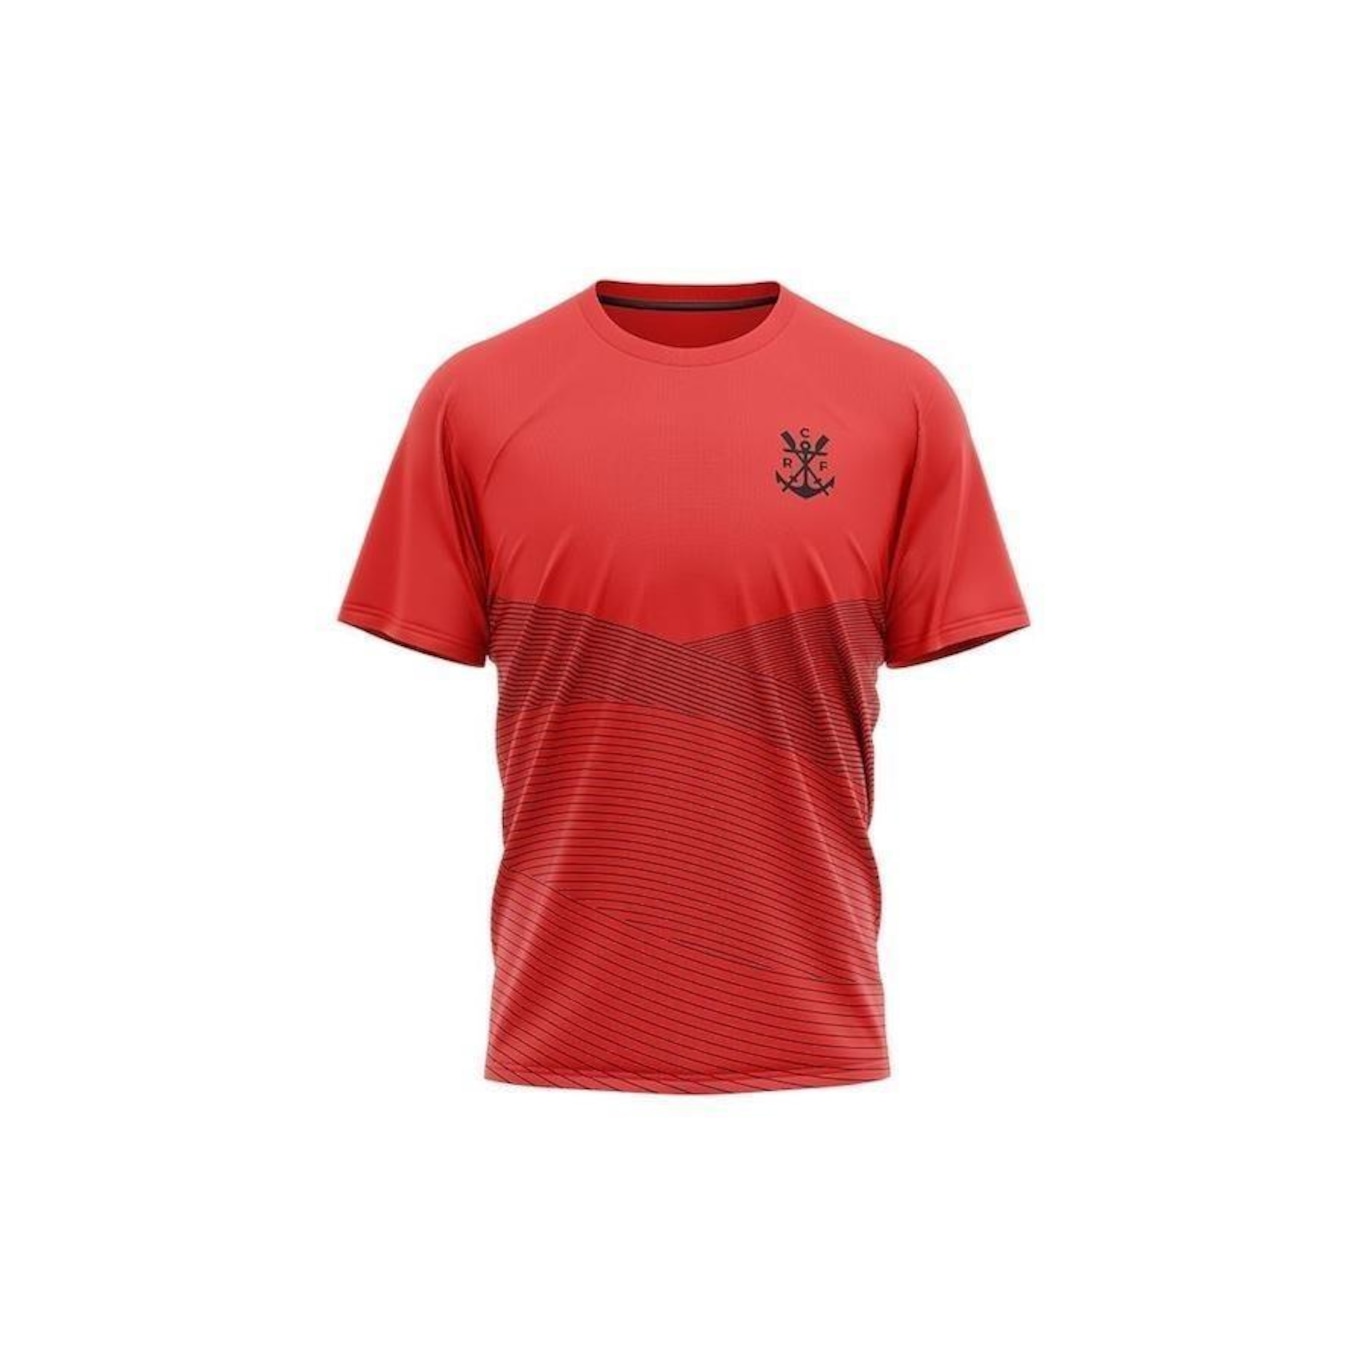 Camiseta do Flamengo Skiff - Masculina - Foto 1